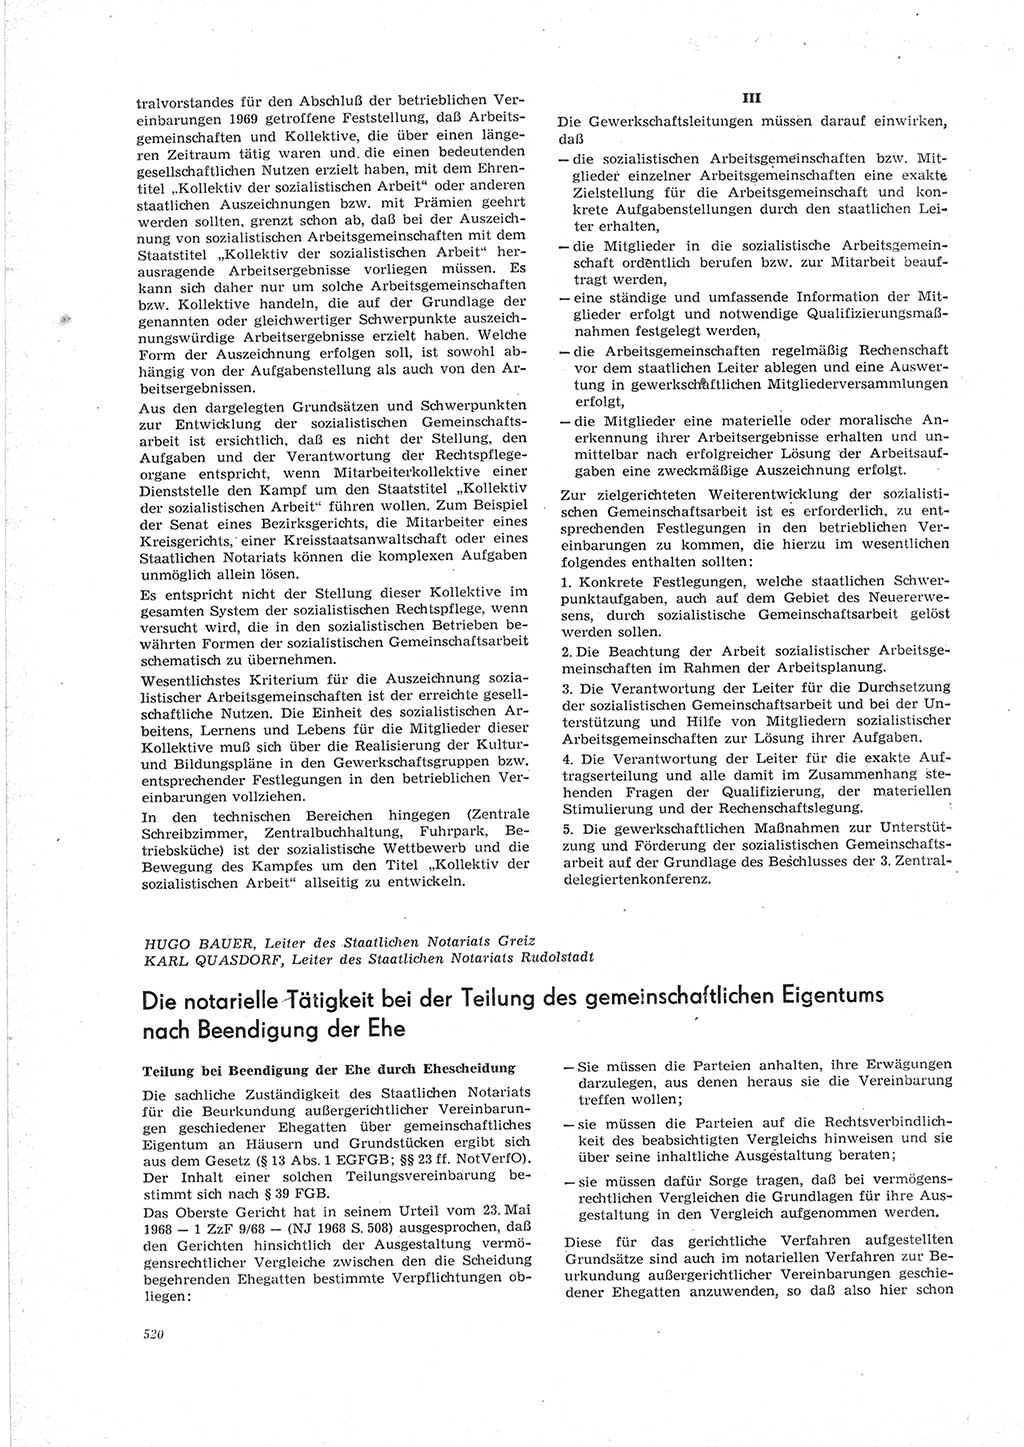 Neue Justiz (NJ), Zeitschrift für Recht und Rechtswissenschaft [Deutsche Demokratische Republik (DDR)], 23. Jahrgang 1969, Seite 520 (NJ DDR 1969, S. 520)